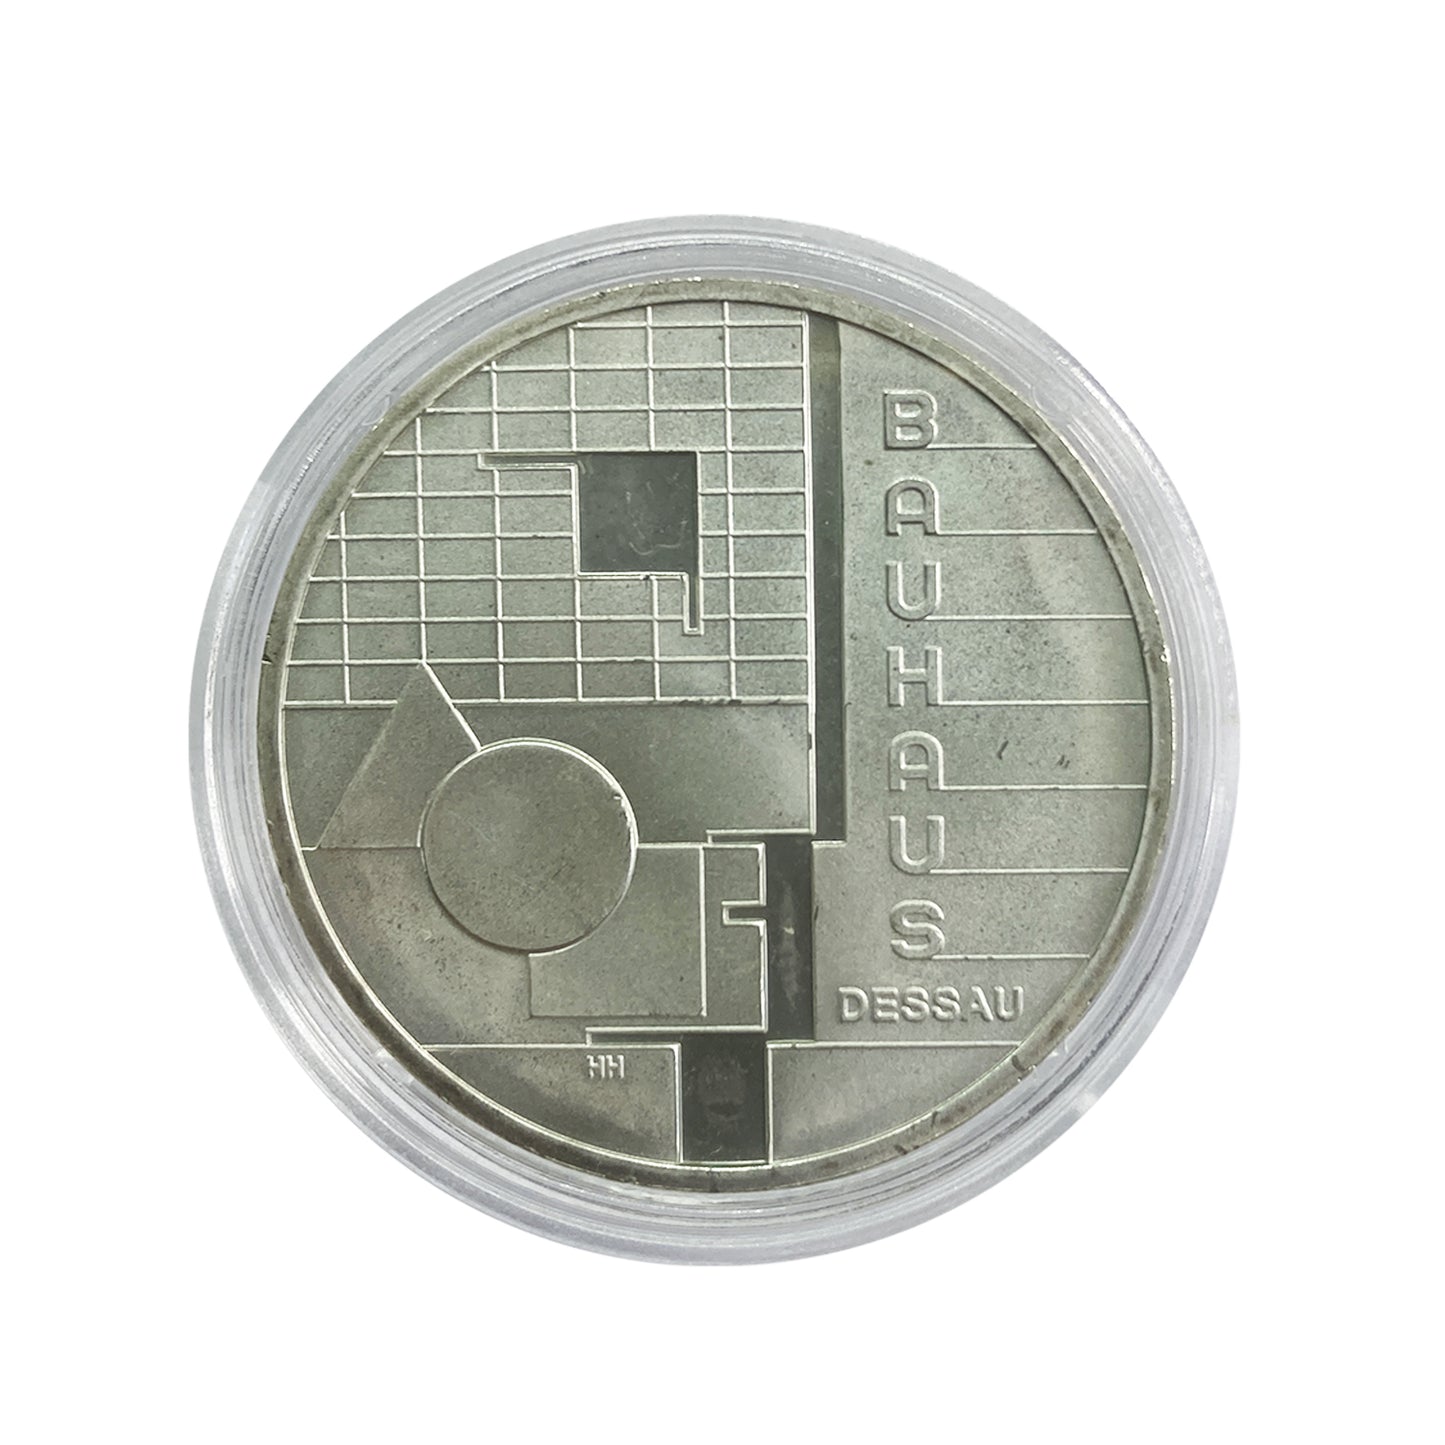 Alemania - Moneda 10 euros plata 2004 -Escuela de la Bauhaus